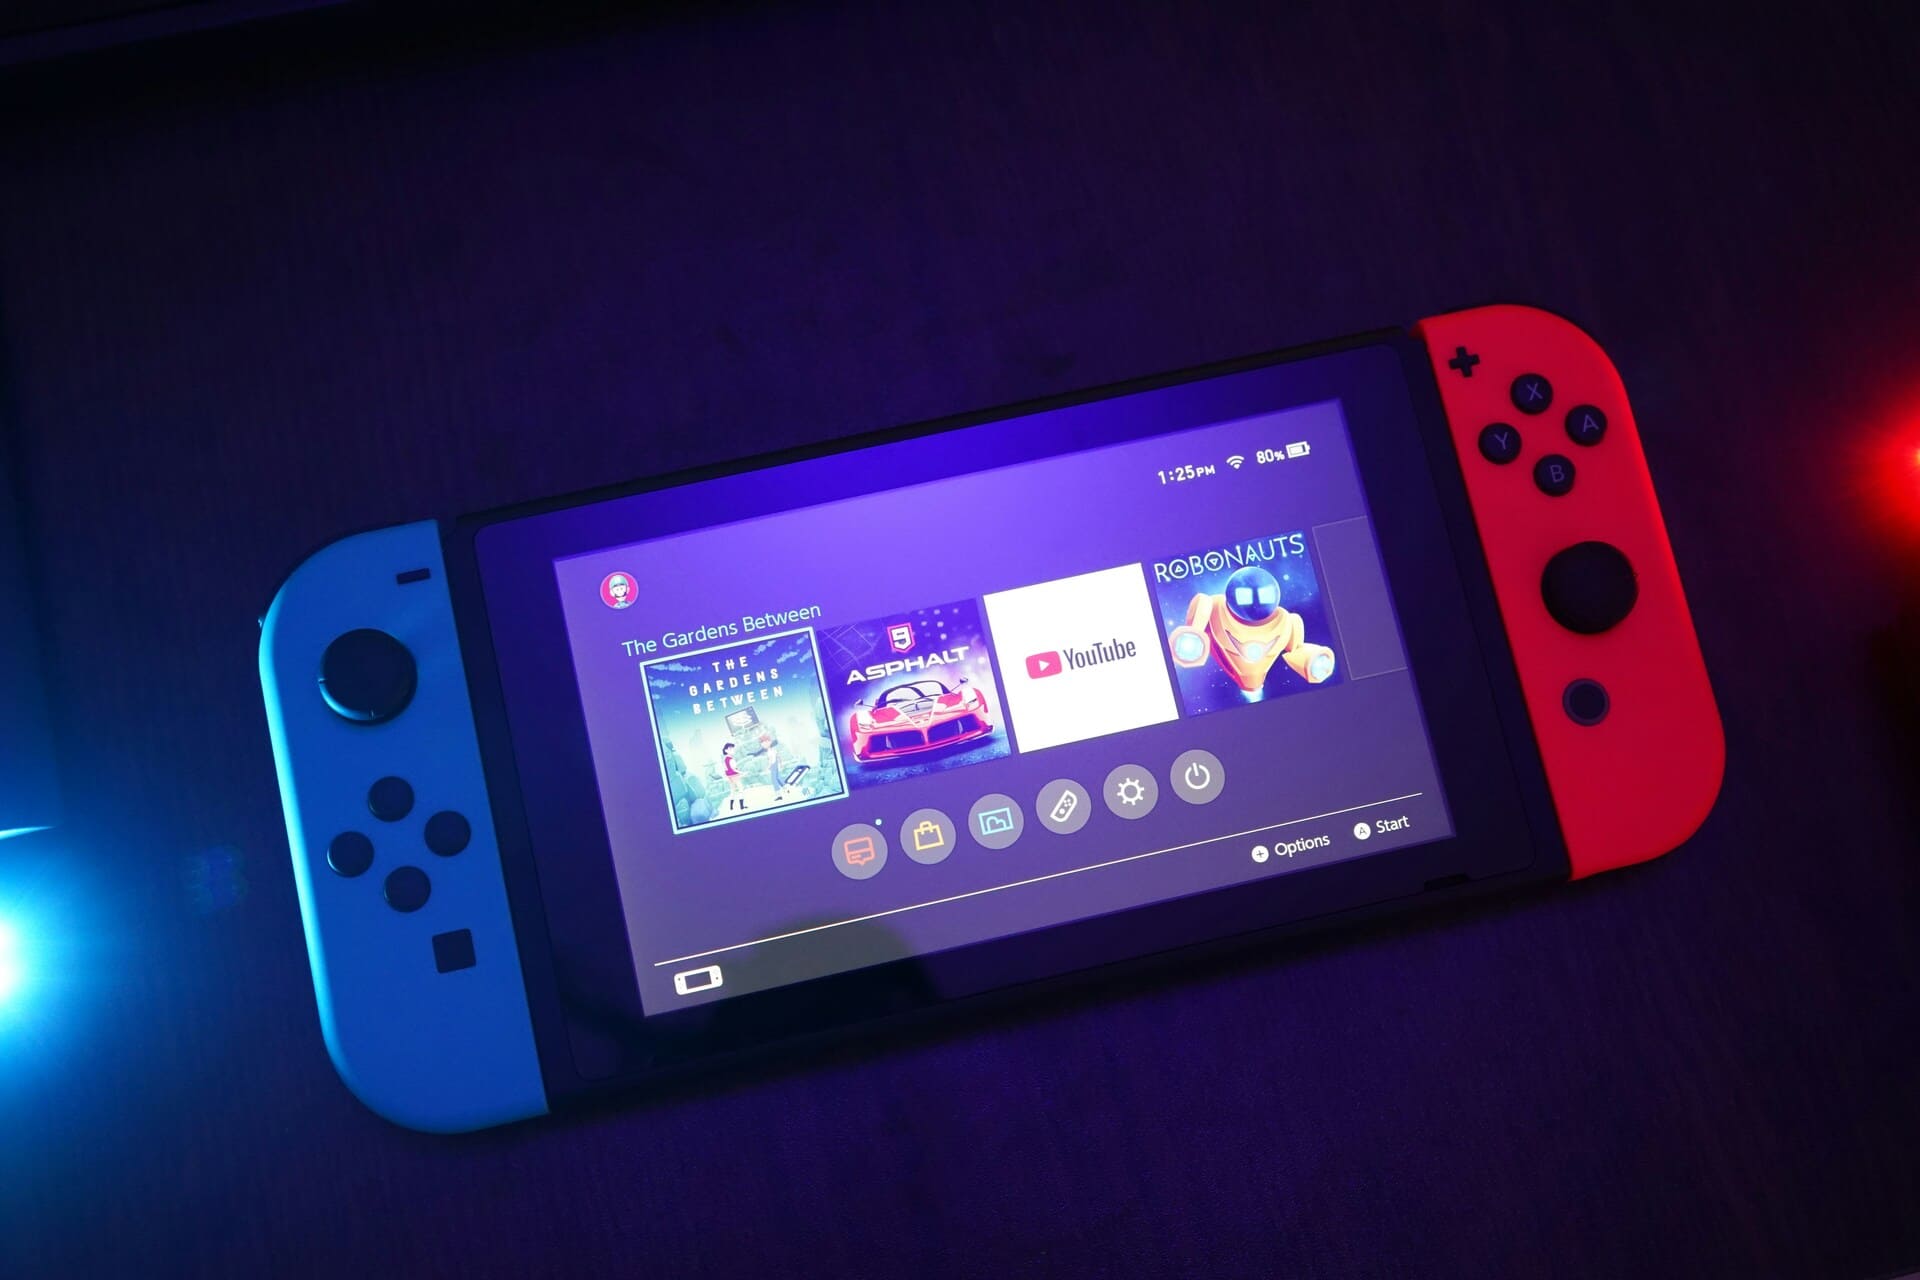 Die Nintendo Switch im Handheld-Modus mit blauem und rotem Joy-Con-Controller